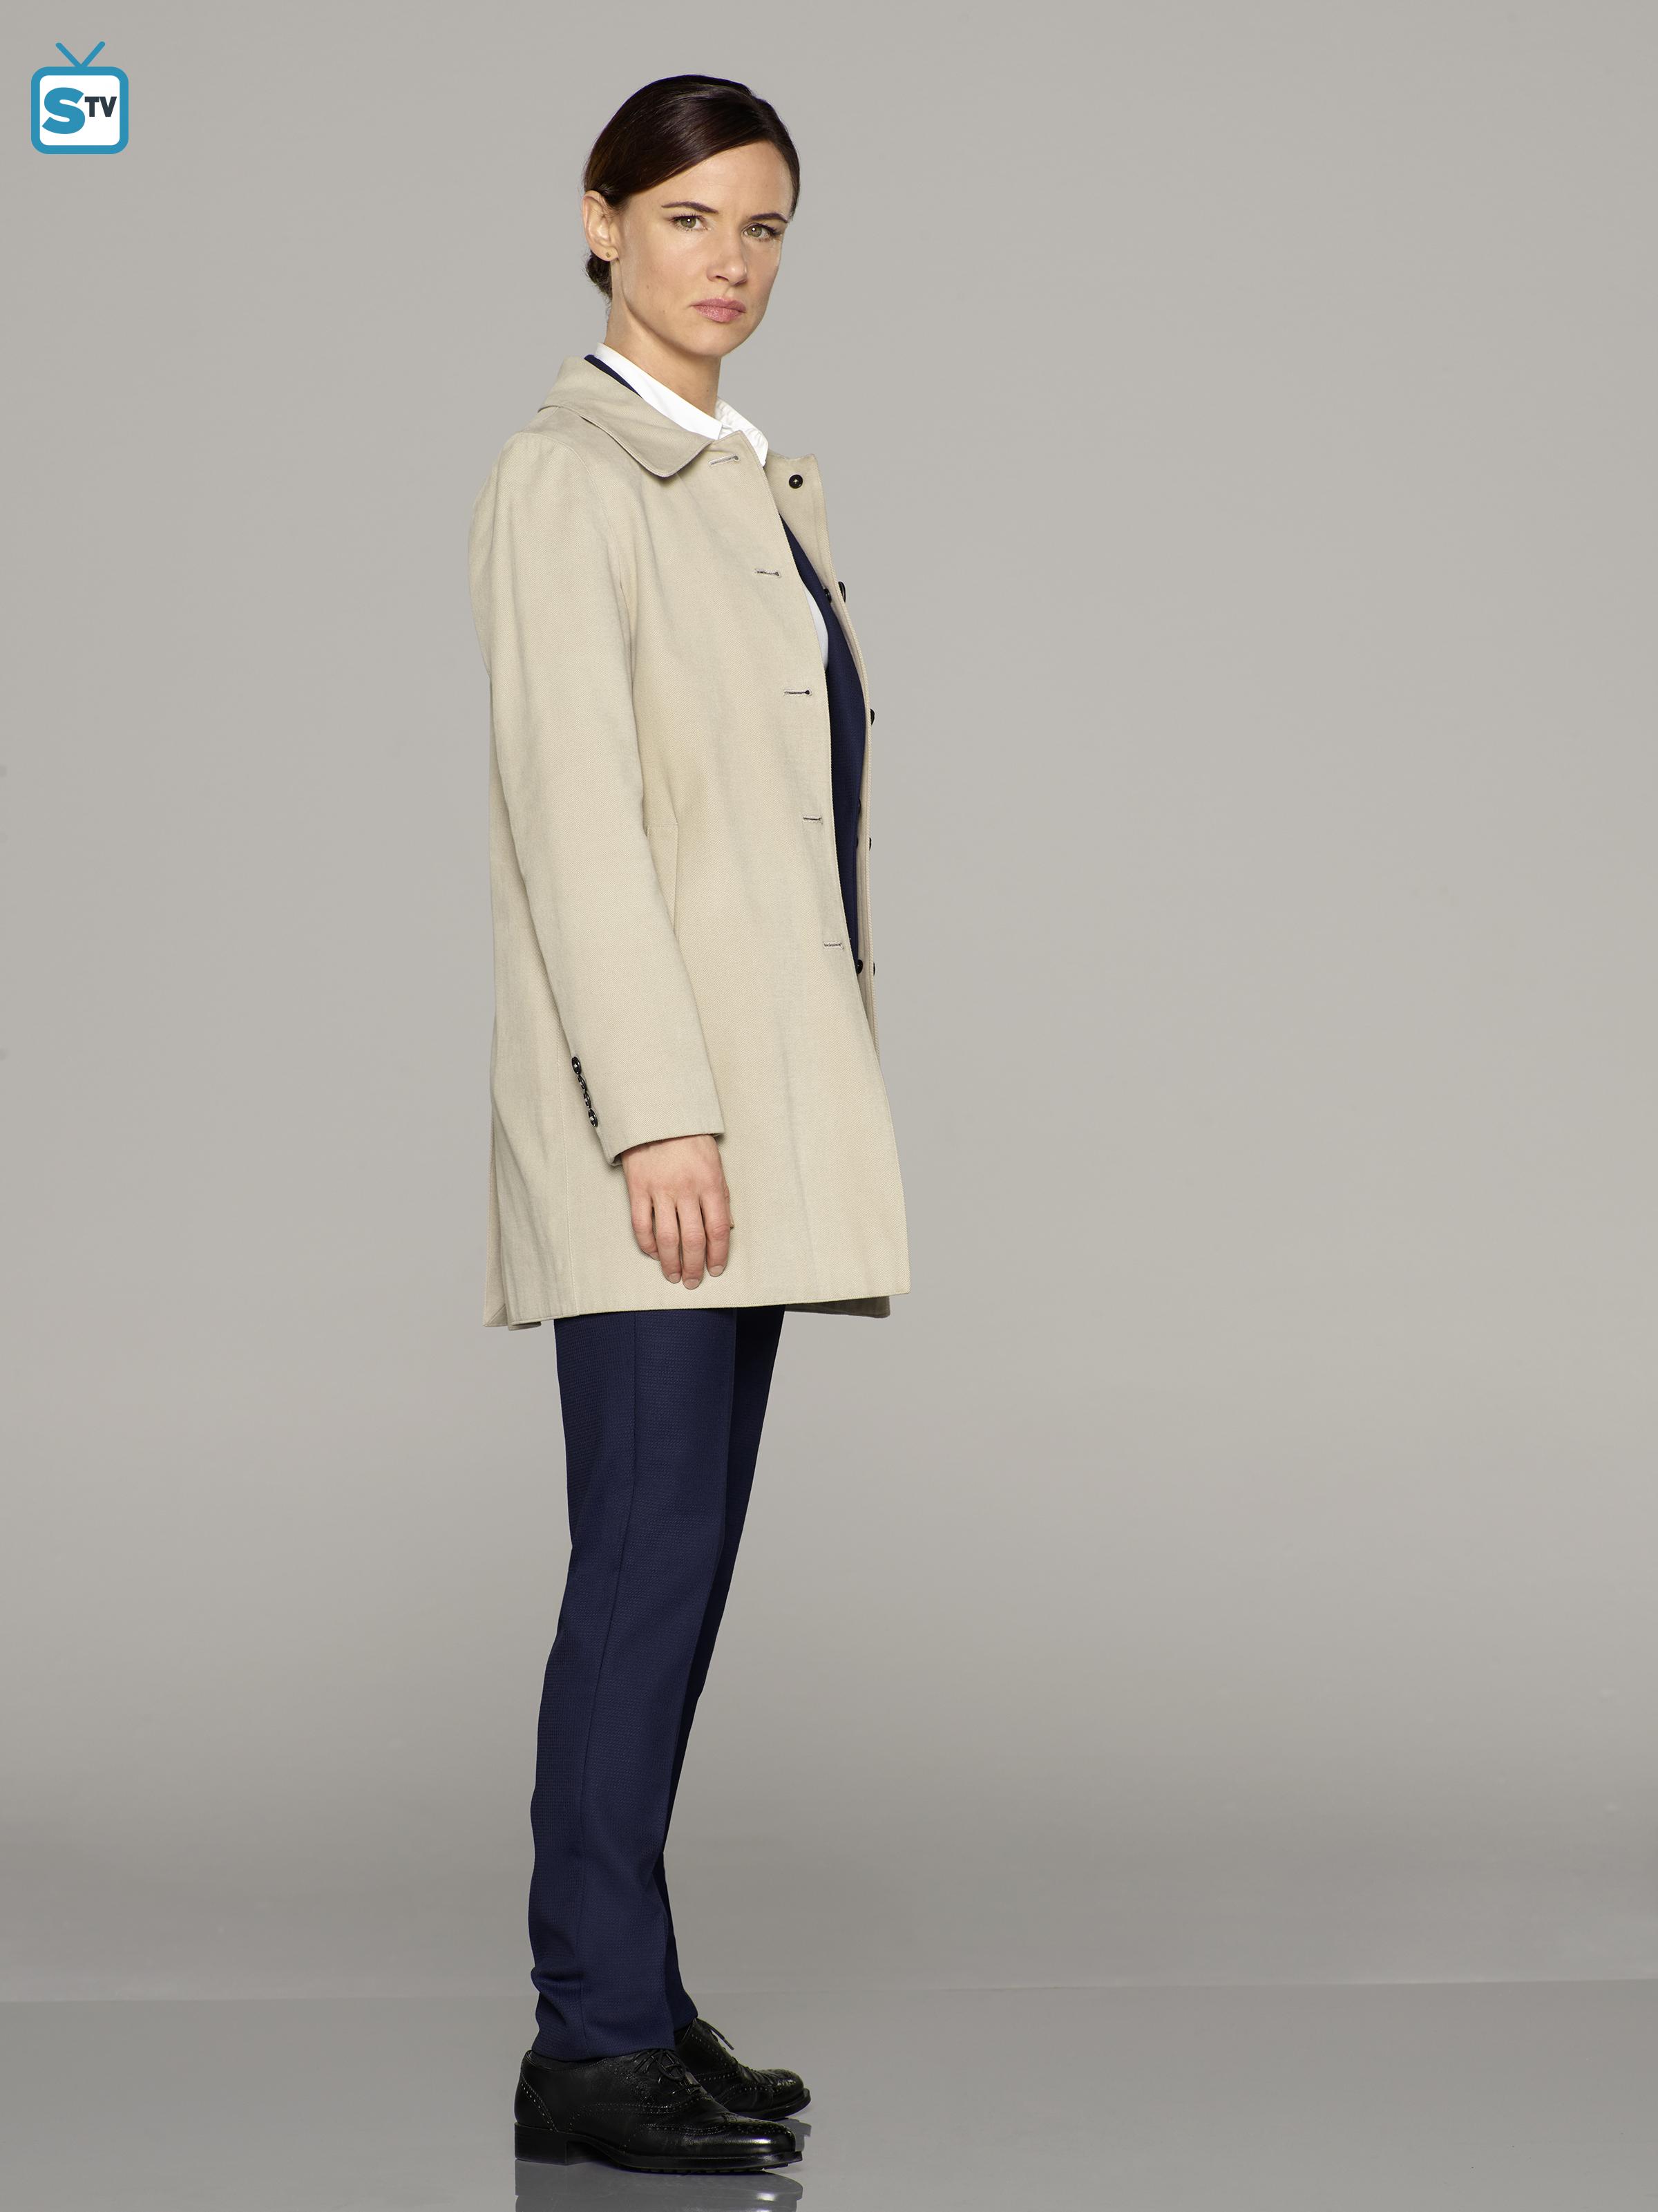 Secrets and Lies - Season 2 Portrait - Juliette Lewis as Detective Andrea Cornell